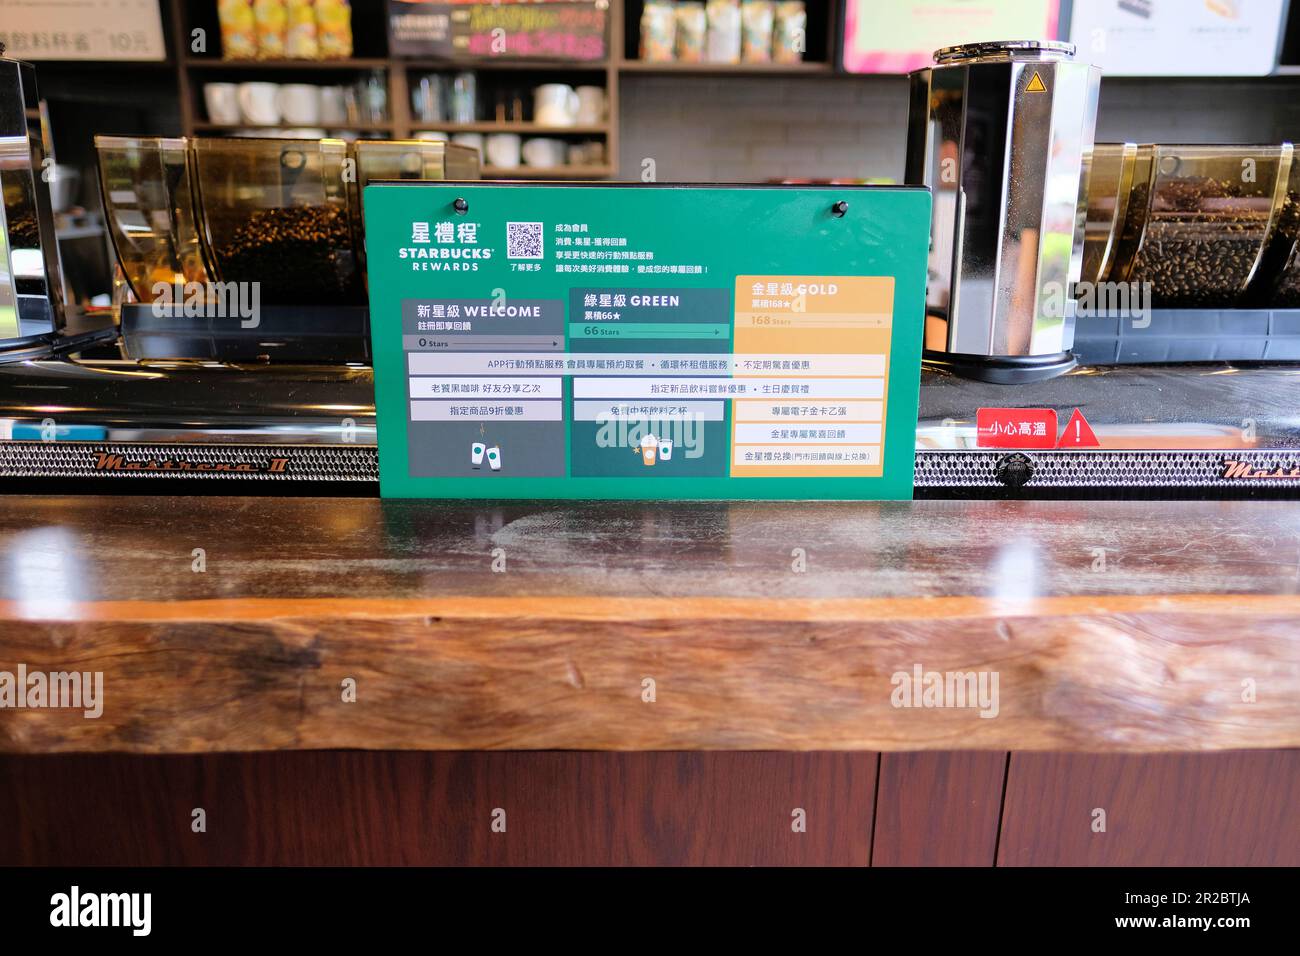 Innenansicht des Starbucks Coffee Shop-Standorts in Kaohsiung, Taiwan; Bonusprogramm; amerikanische Geschäftsinteressen und Investitionen im Ausland und in Asien. Stockfoto